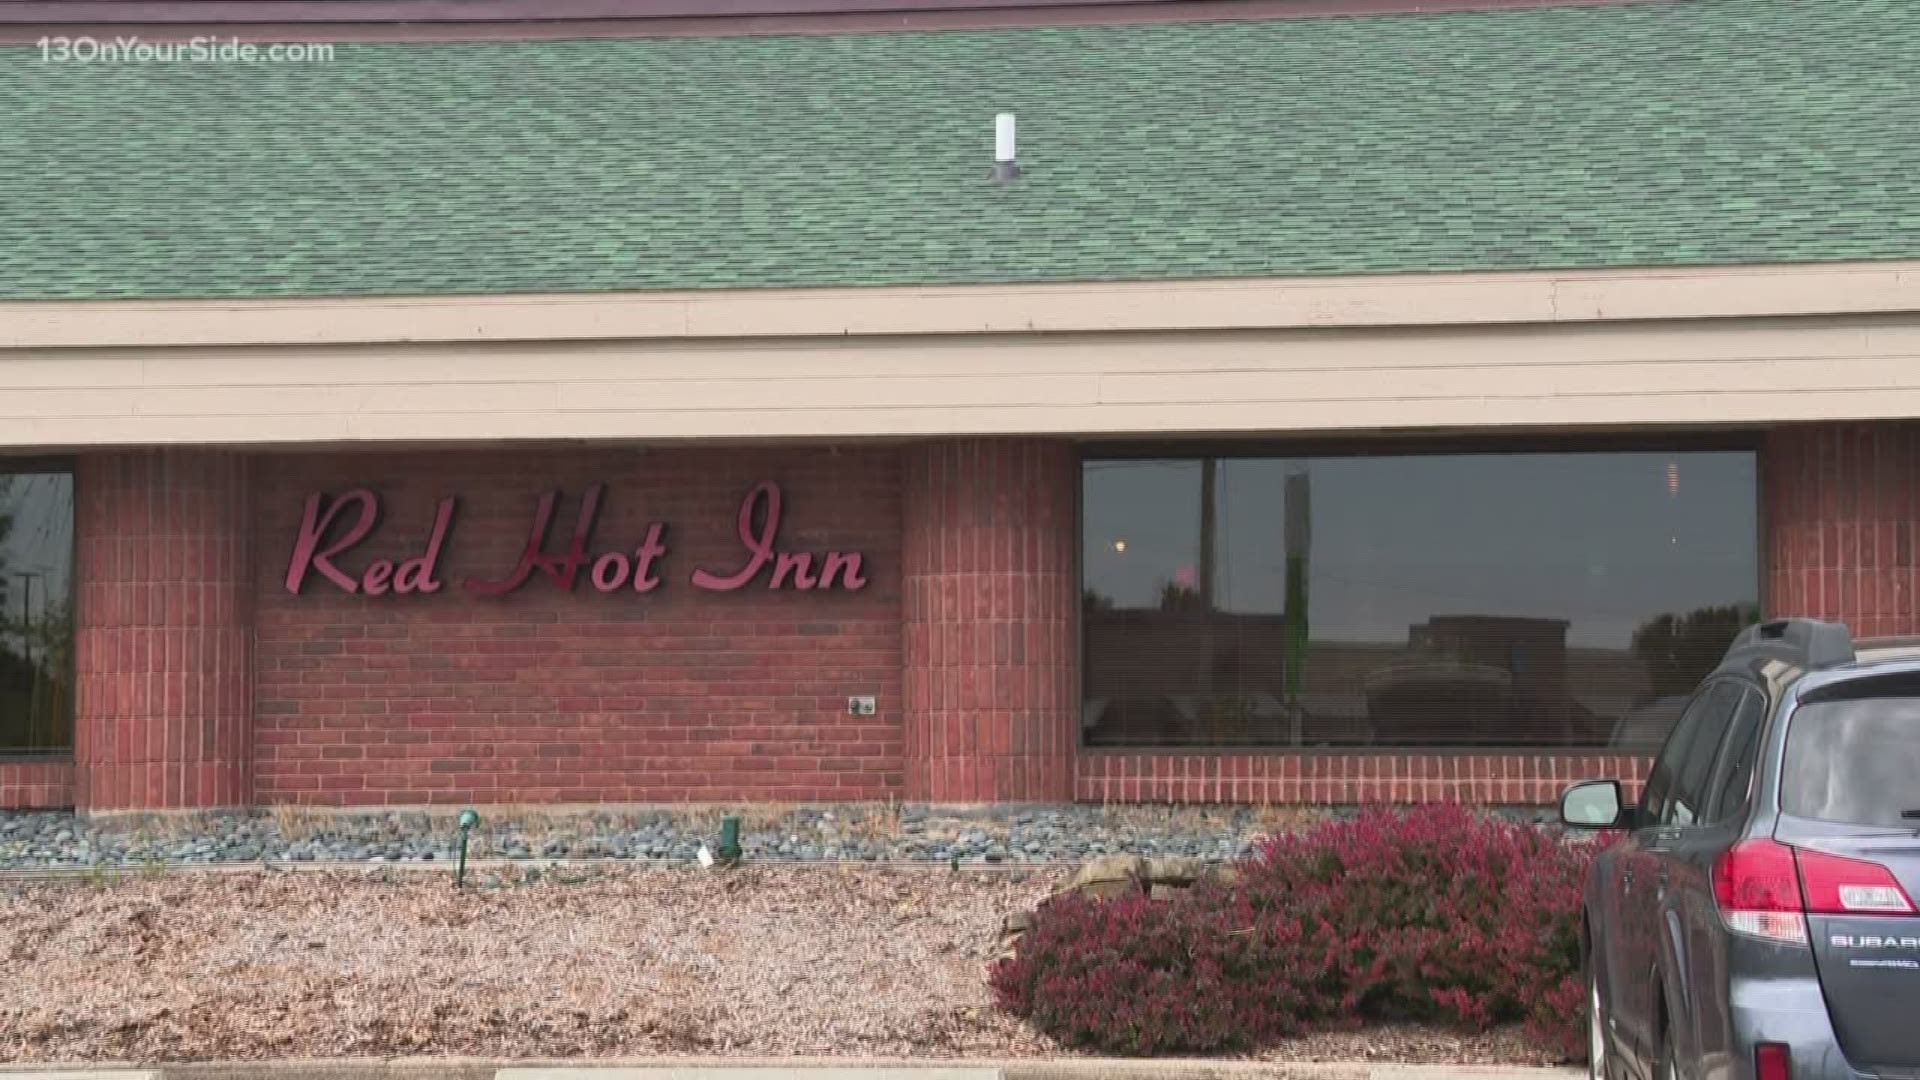 Red Hot Inn announces closure